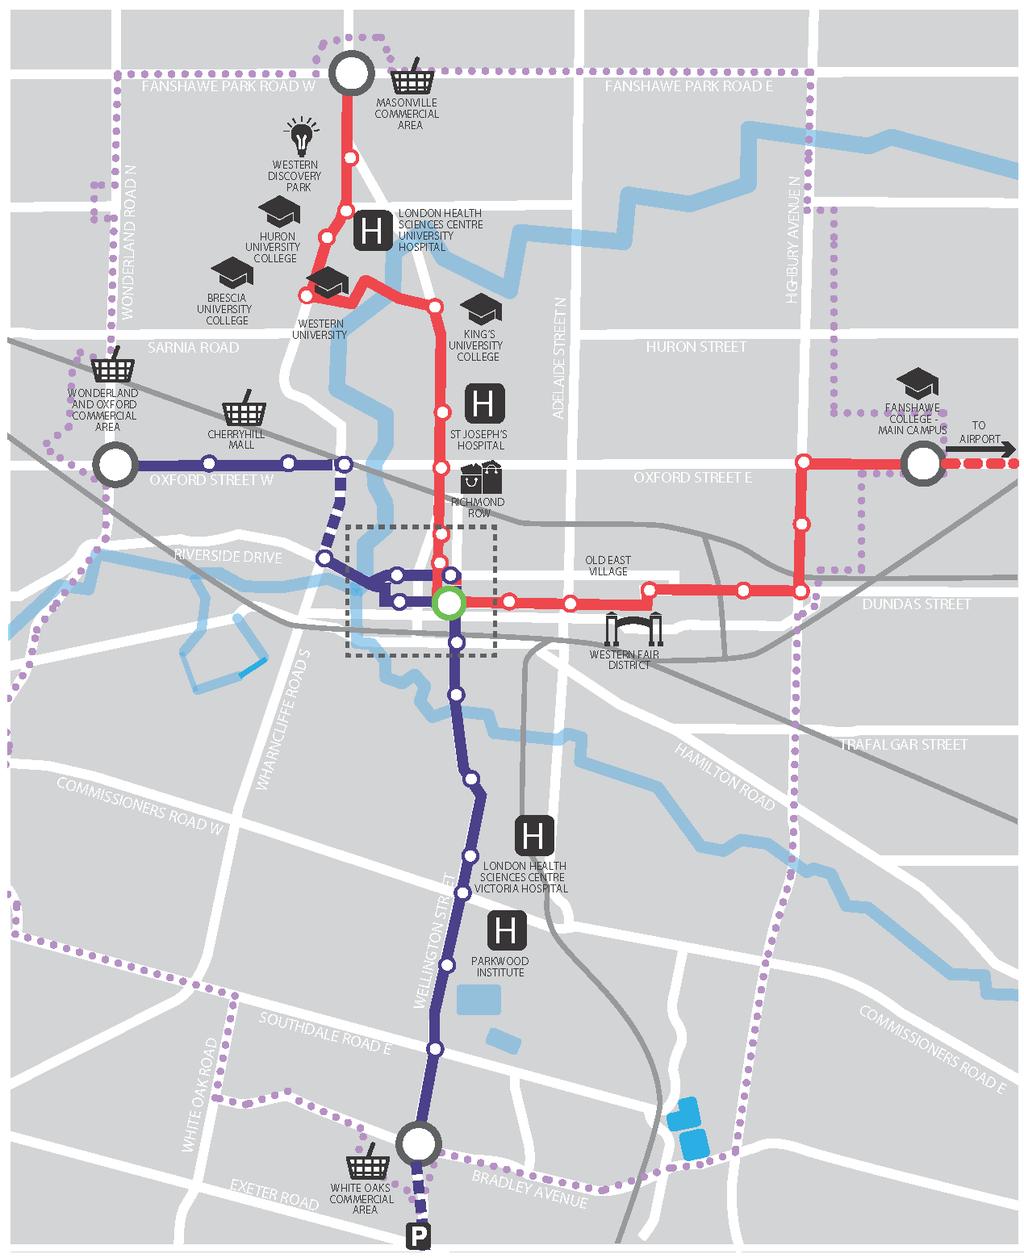 Rapid Transit Master Plan Jan 2015: Work begins on Rapid Transit Master Plan May 2017: City